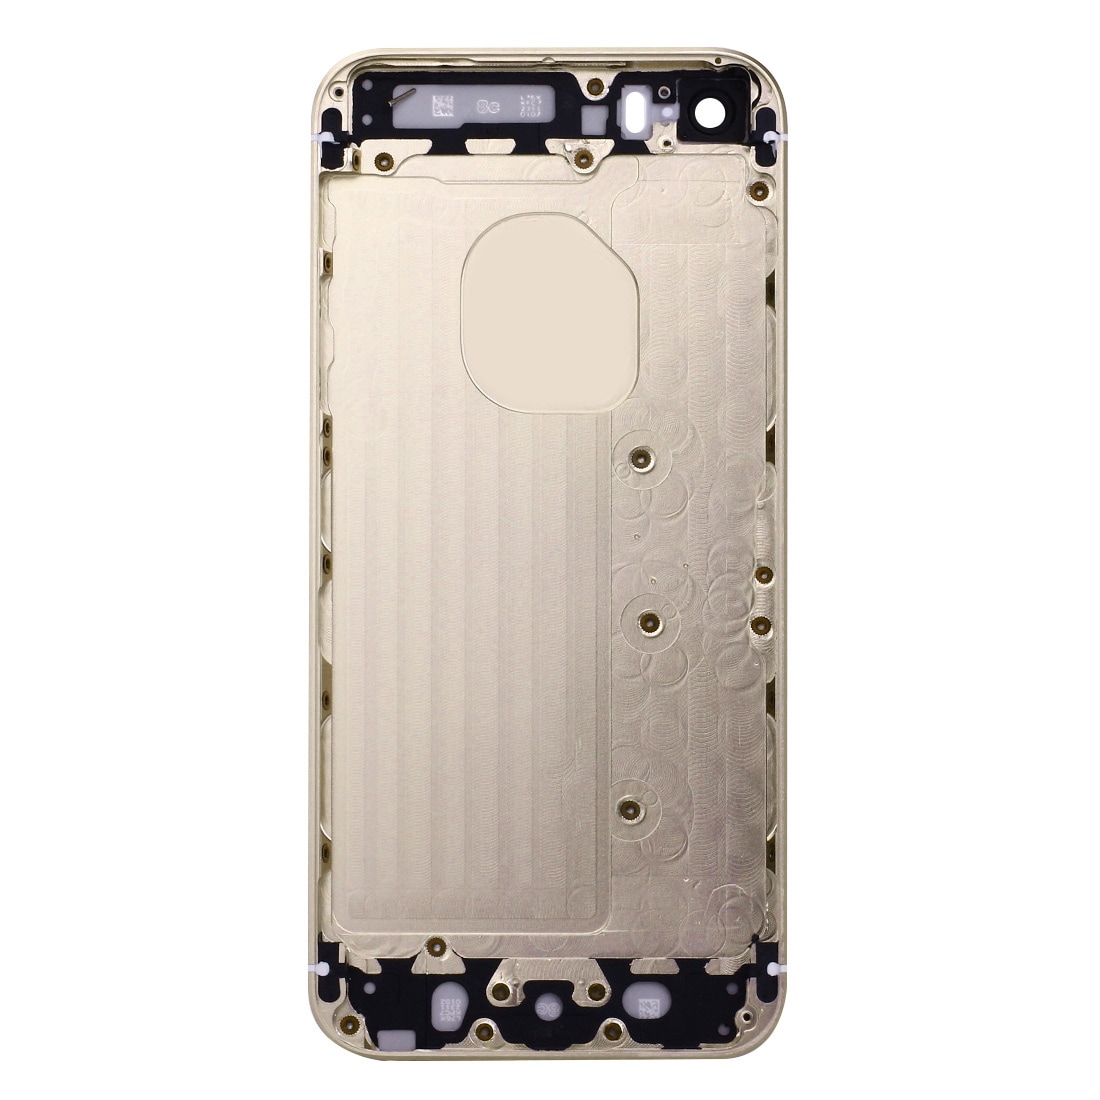 Komplett skallbytte iPhone SE - Gull